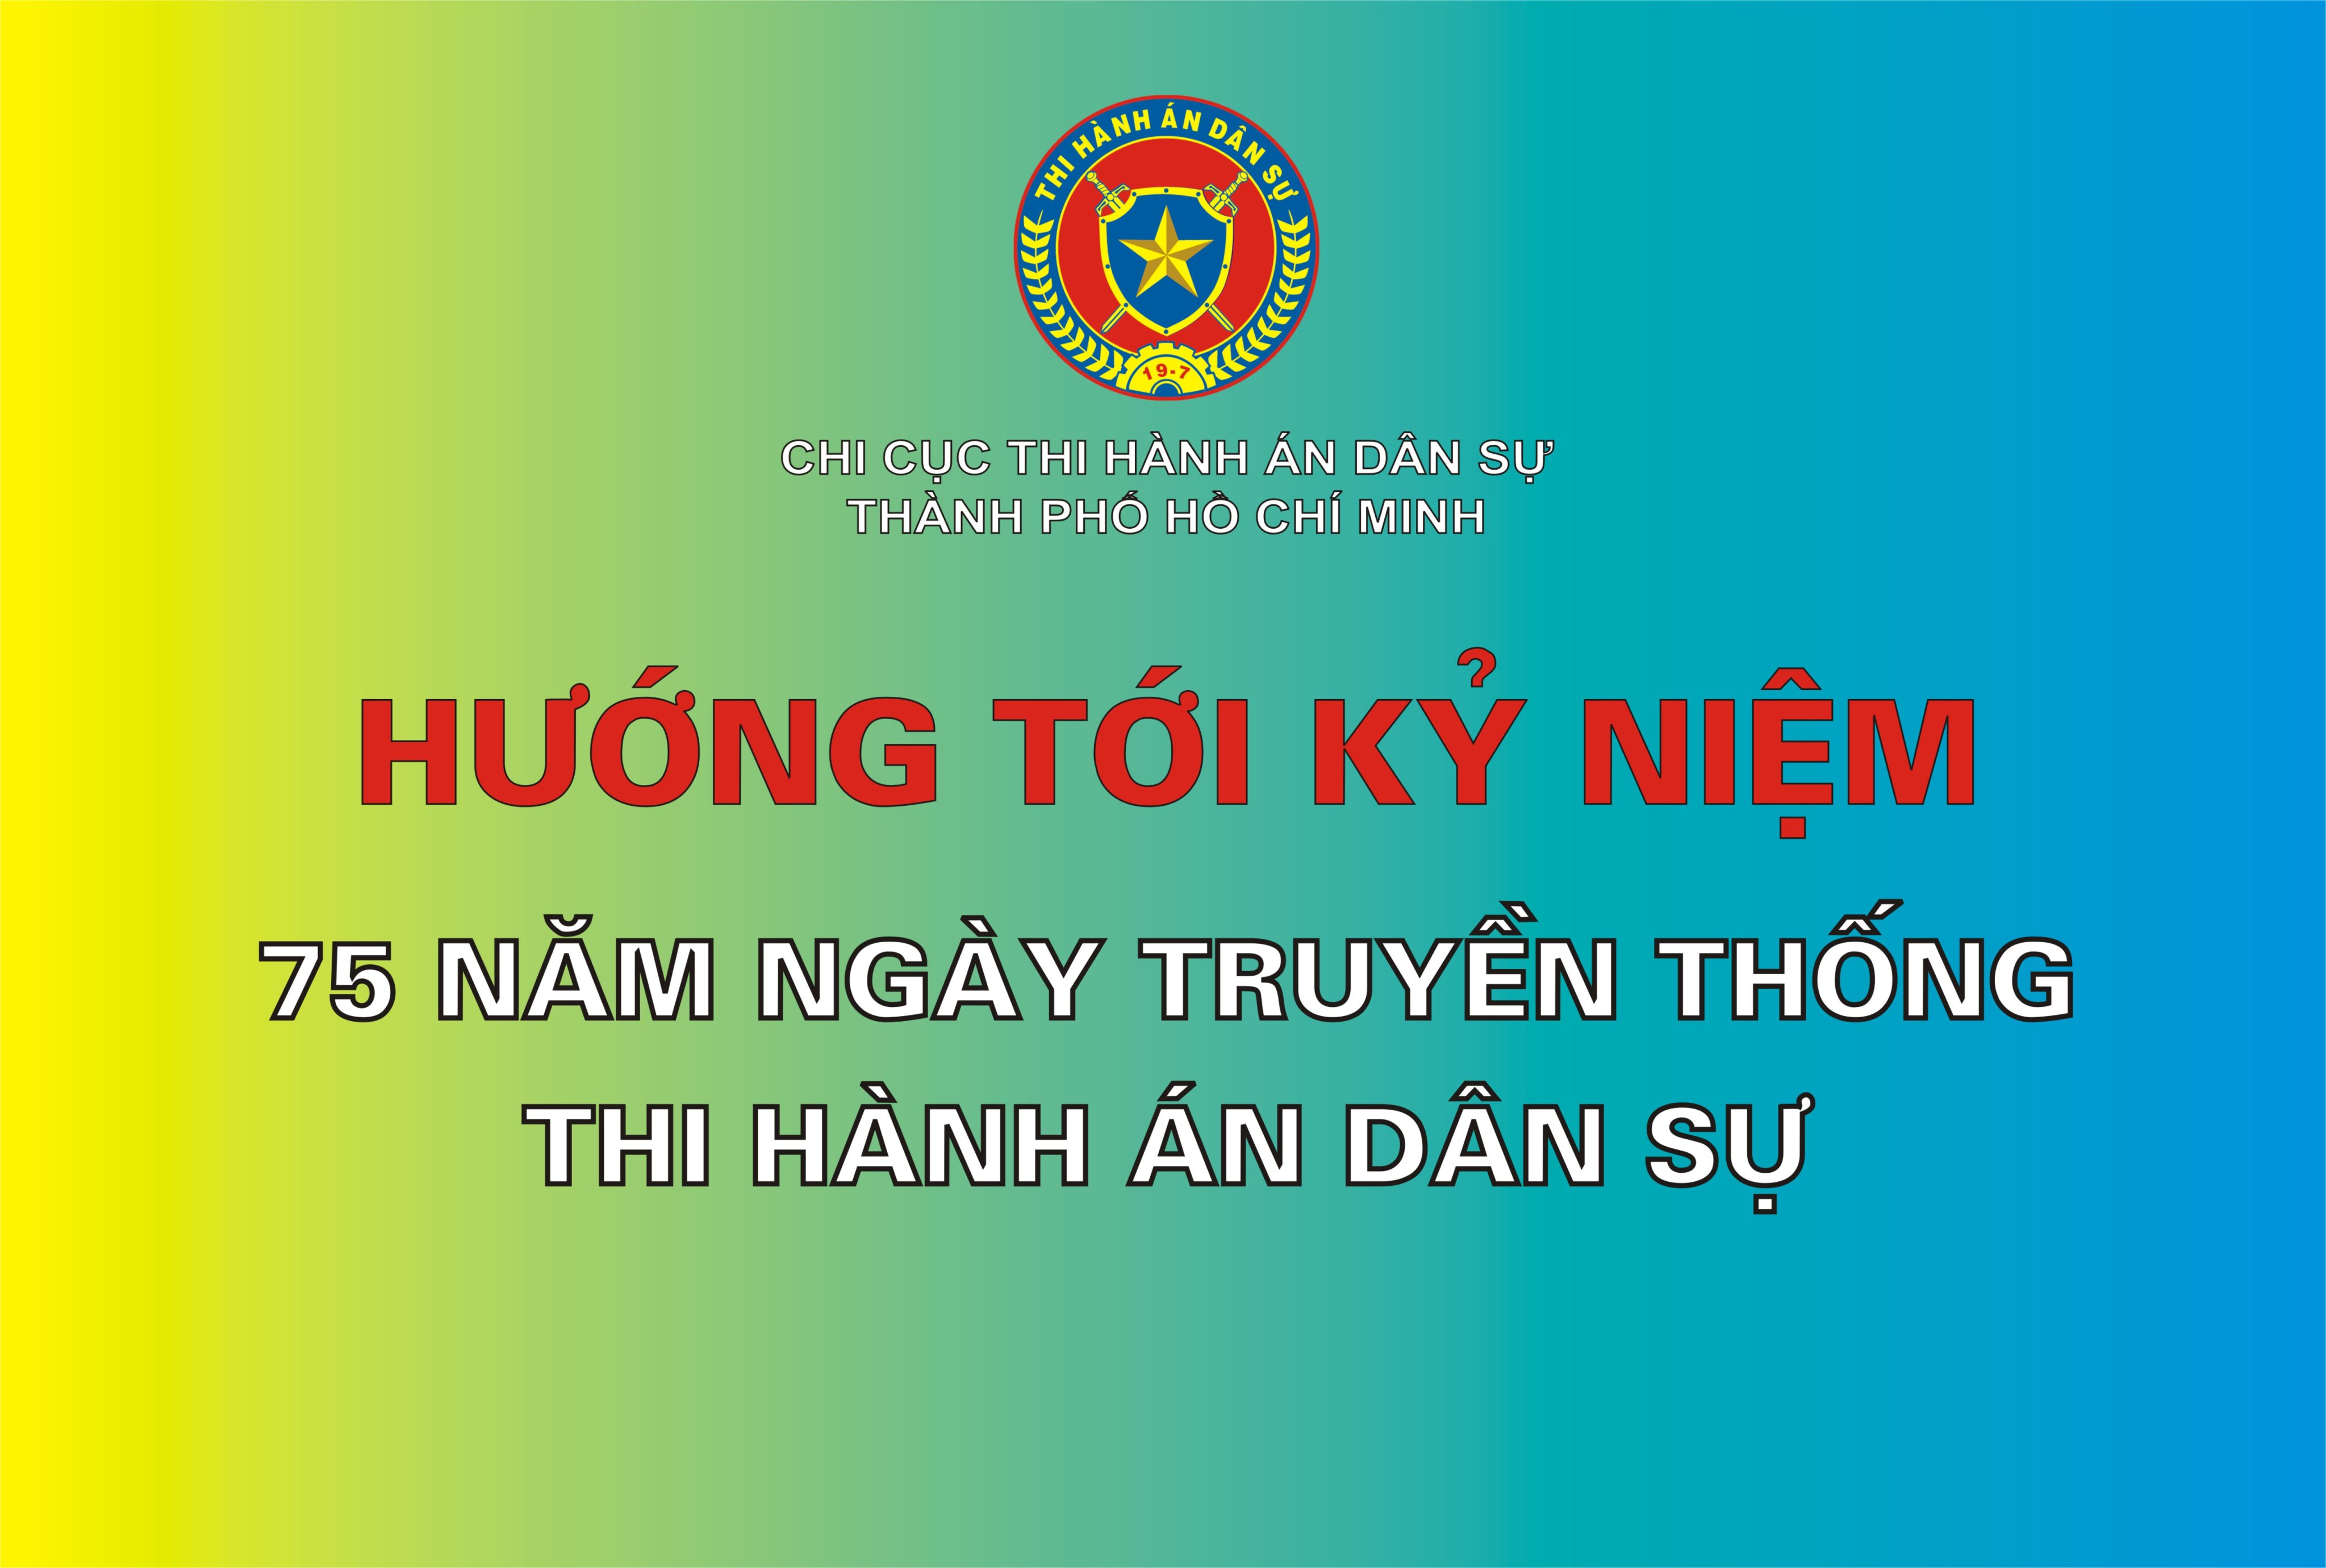 Cục Thi hành án dân sự Thành phố Hồ Chí Minh: Phát động Đợt thi đua cao điểm lập thành tích chào mừng kỷ niệm 75 năm Ngày truyền thống Thi hành án dân sự (19/7/1946 -19/7/2021)